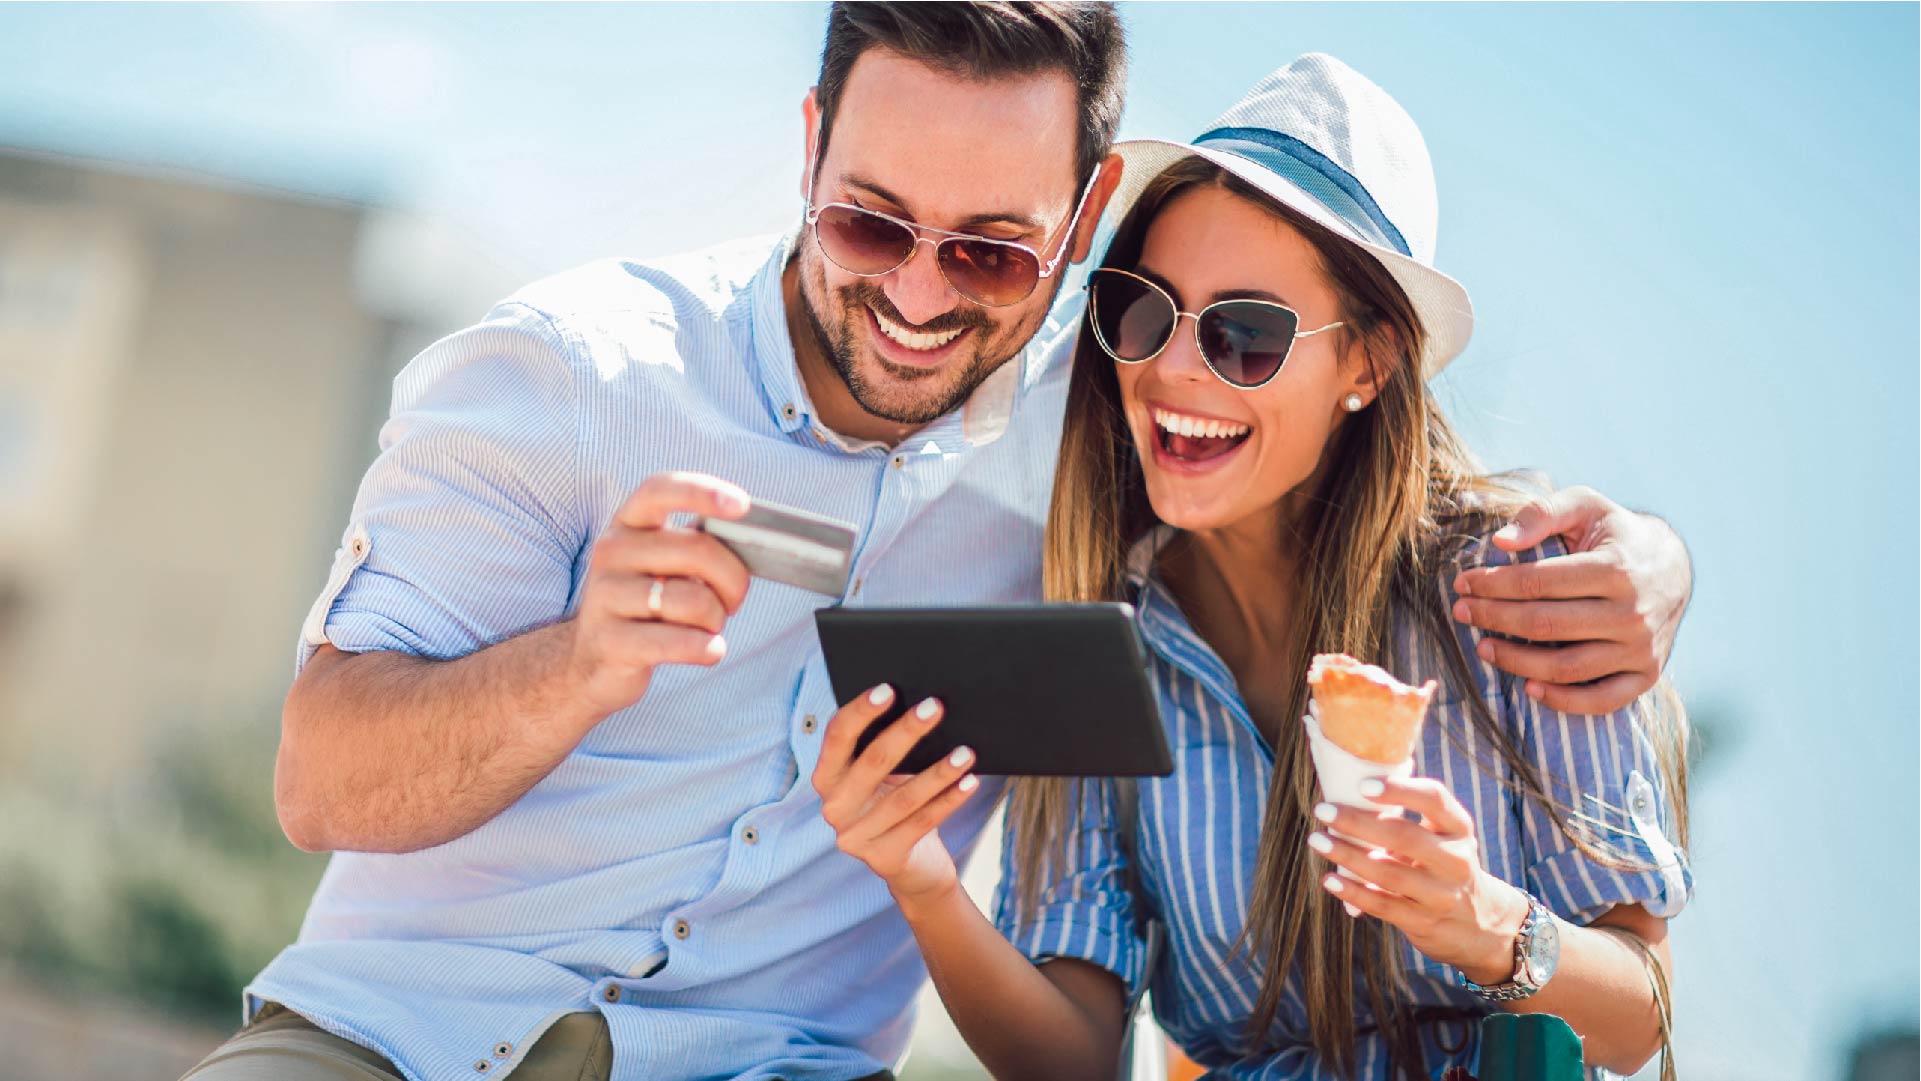 Un couple joyeux en vacances mange une glace et paie avec sa tablette